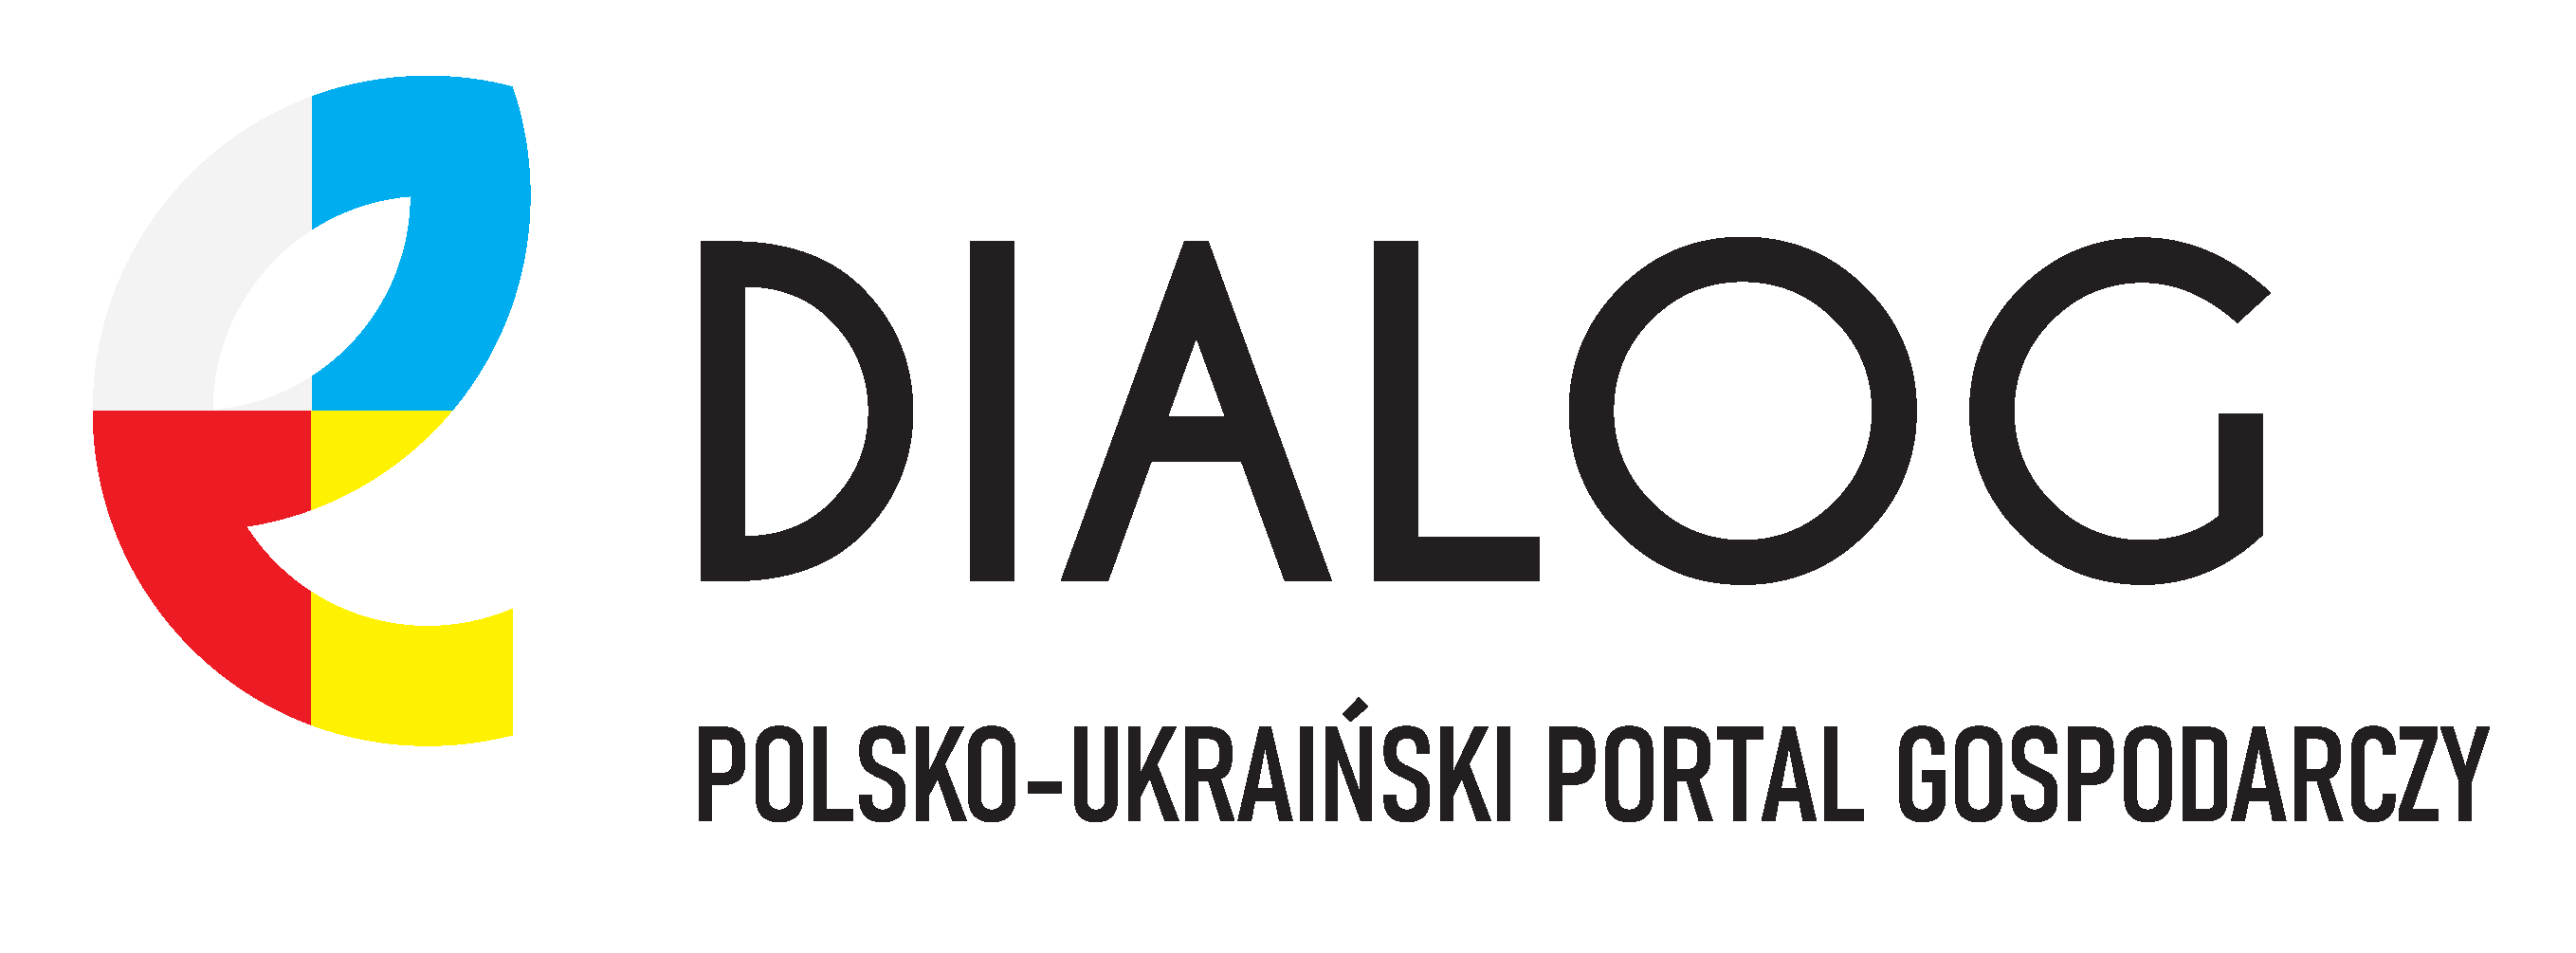 EDialog Polsko – Ukraiński Portal Gospodarczy